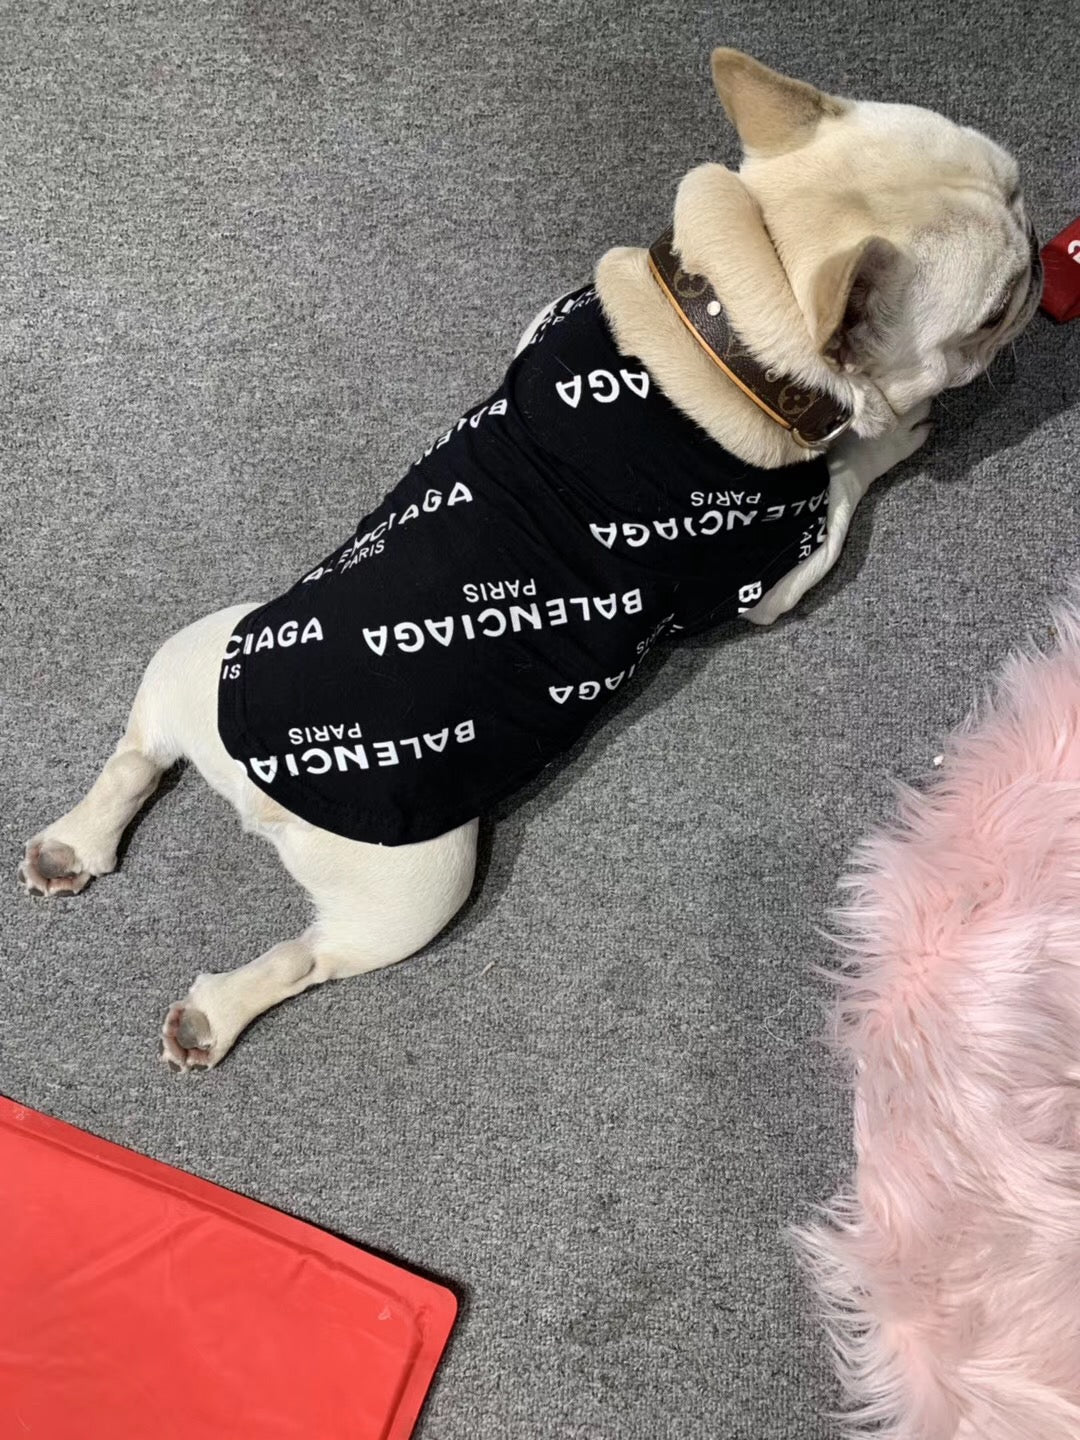 Pawlenciaga Dog Vest